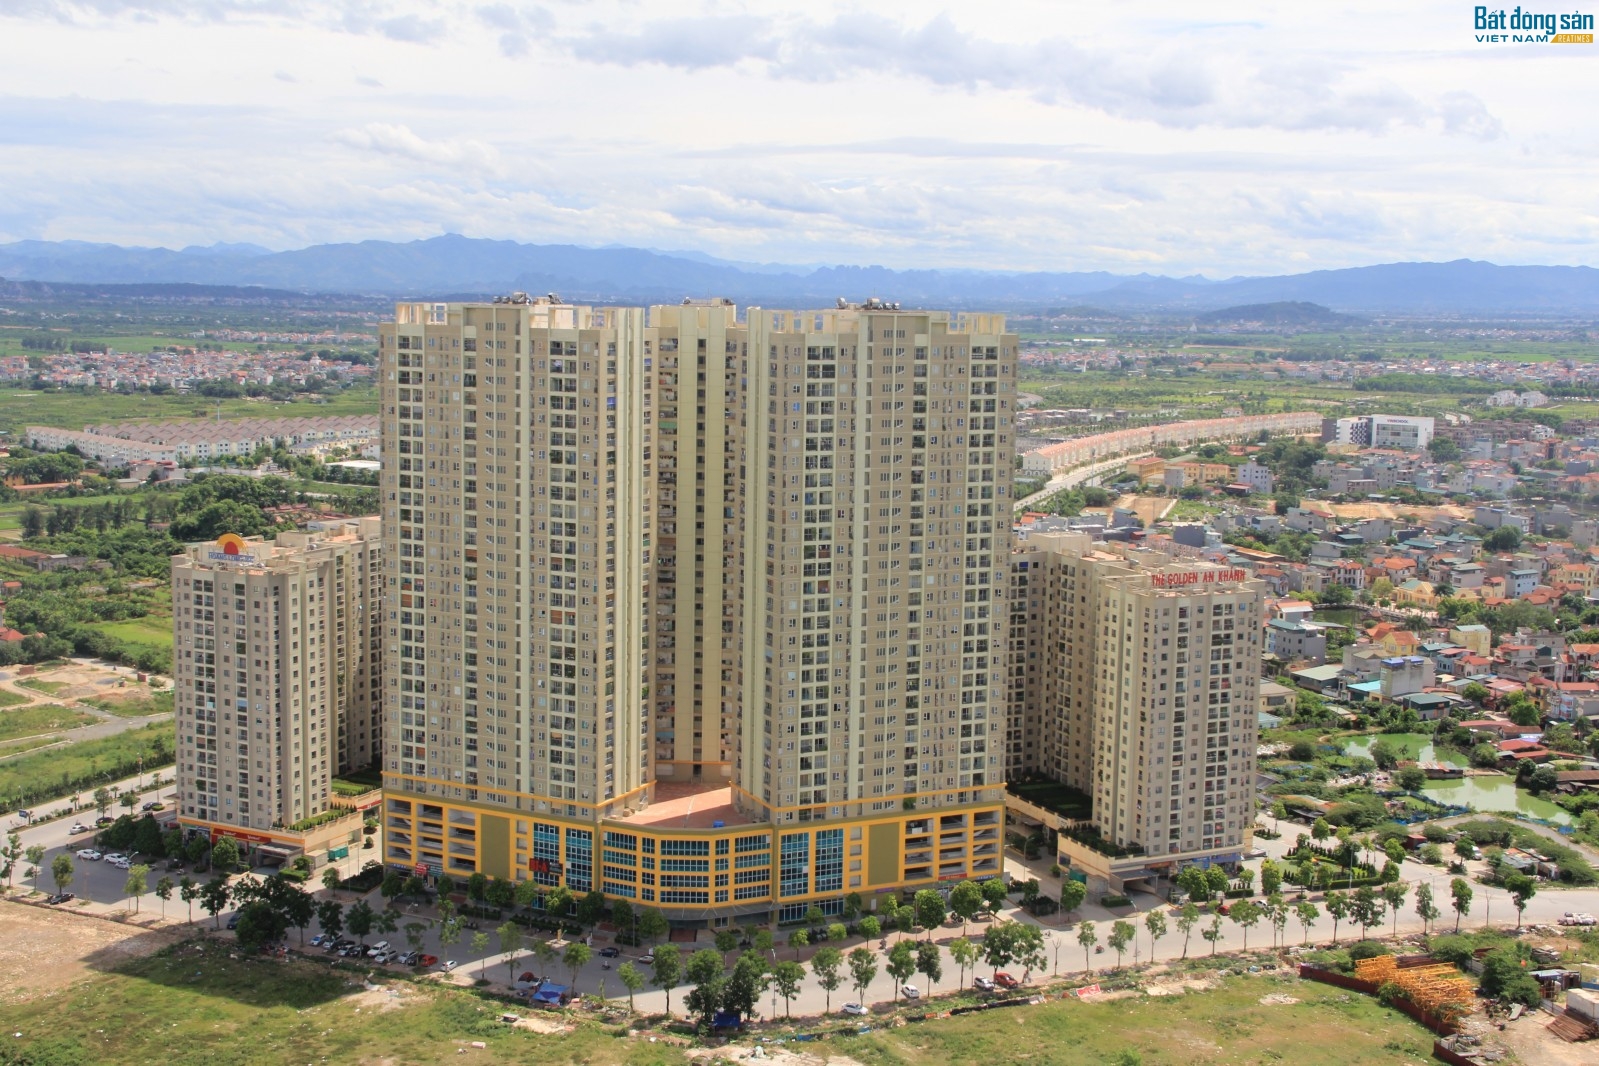 Cũng trong thời điểm đó, dự án chung cư Golden An Khánh cũng bắt đầu cung ra thị trường.